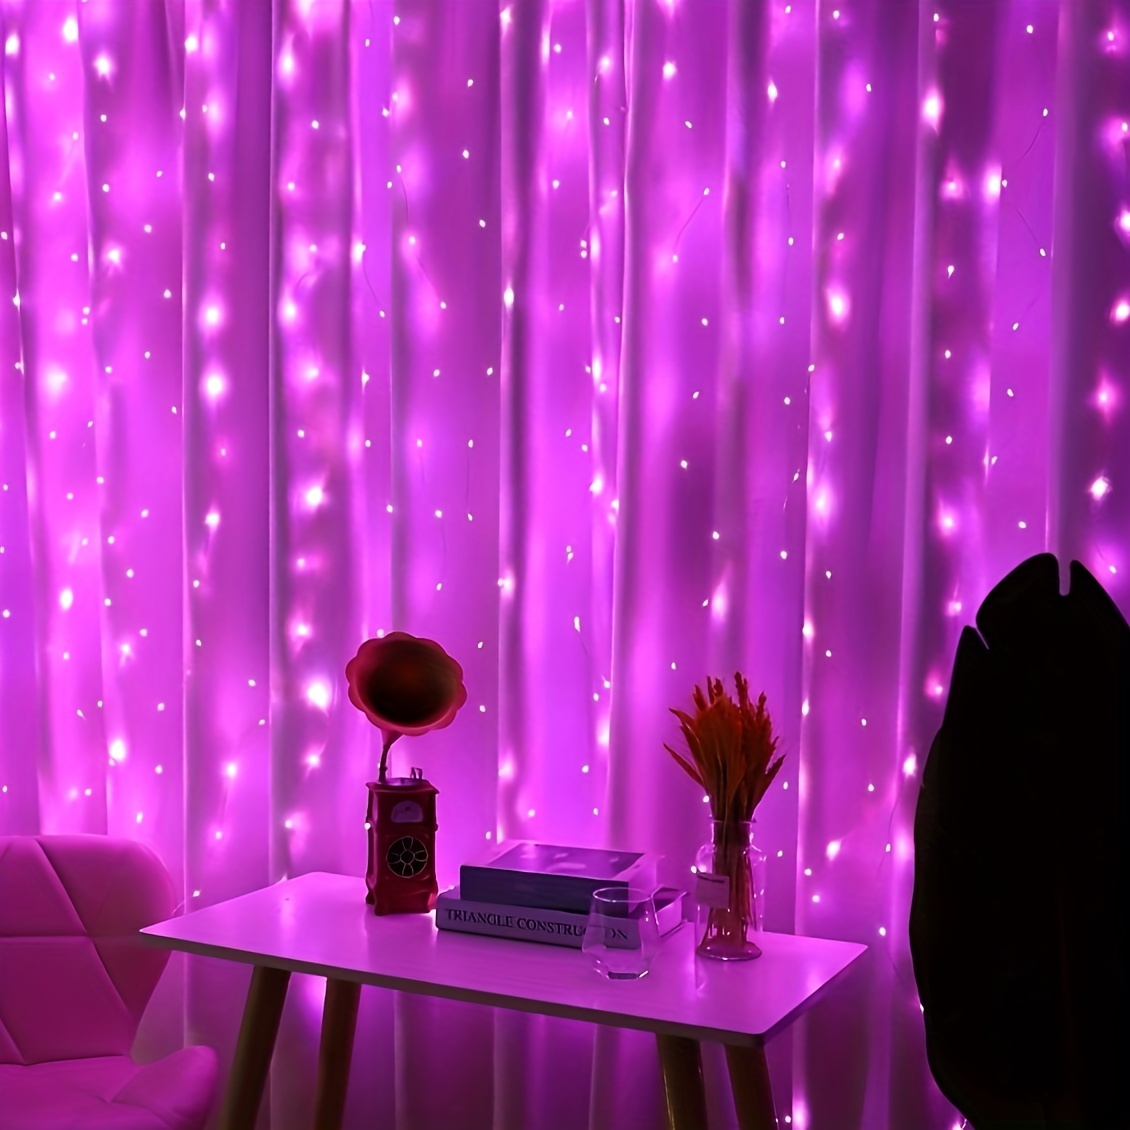 Curtain Fairy Lights 200 LED 2m x 2m Lumières de Noël Imperméable à l'eau  USB Powered 8 Modes & Remote String Lights pour Chambre Mur Fenêtre Patio  Party Noël Décorations extérieures intérieures 